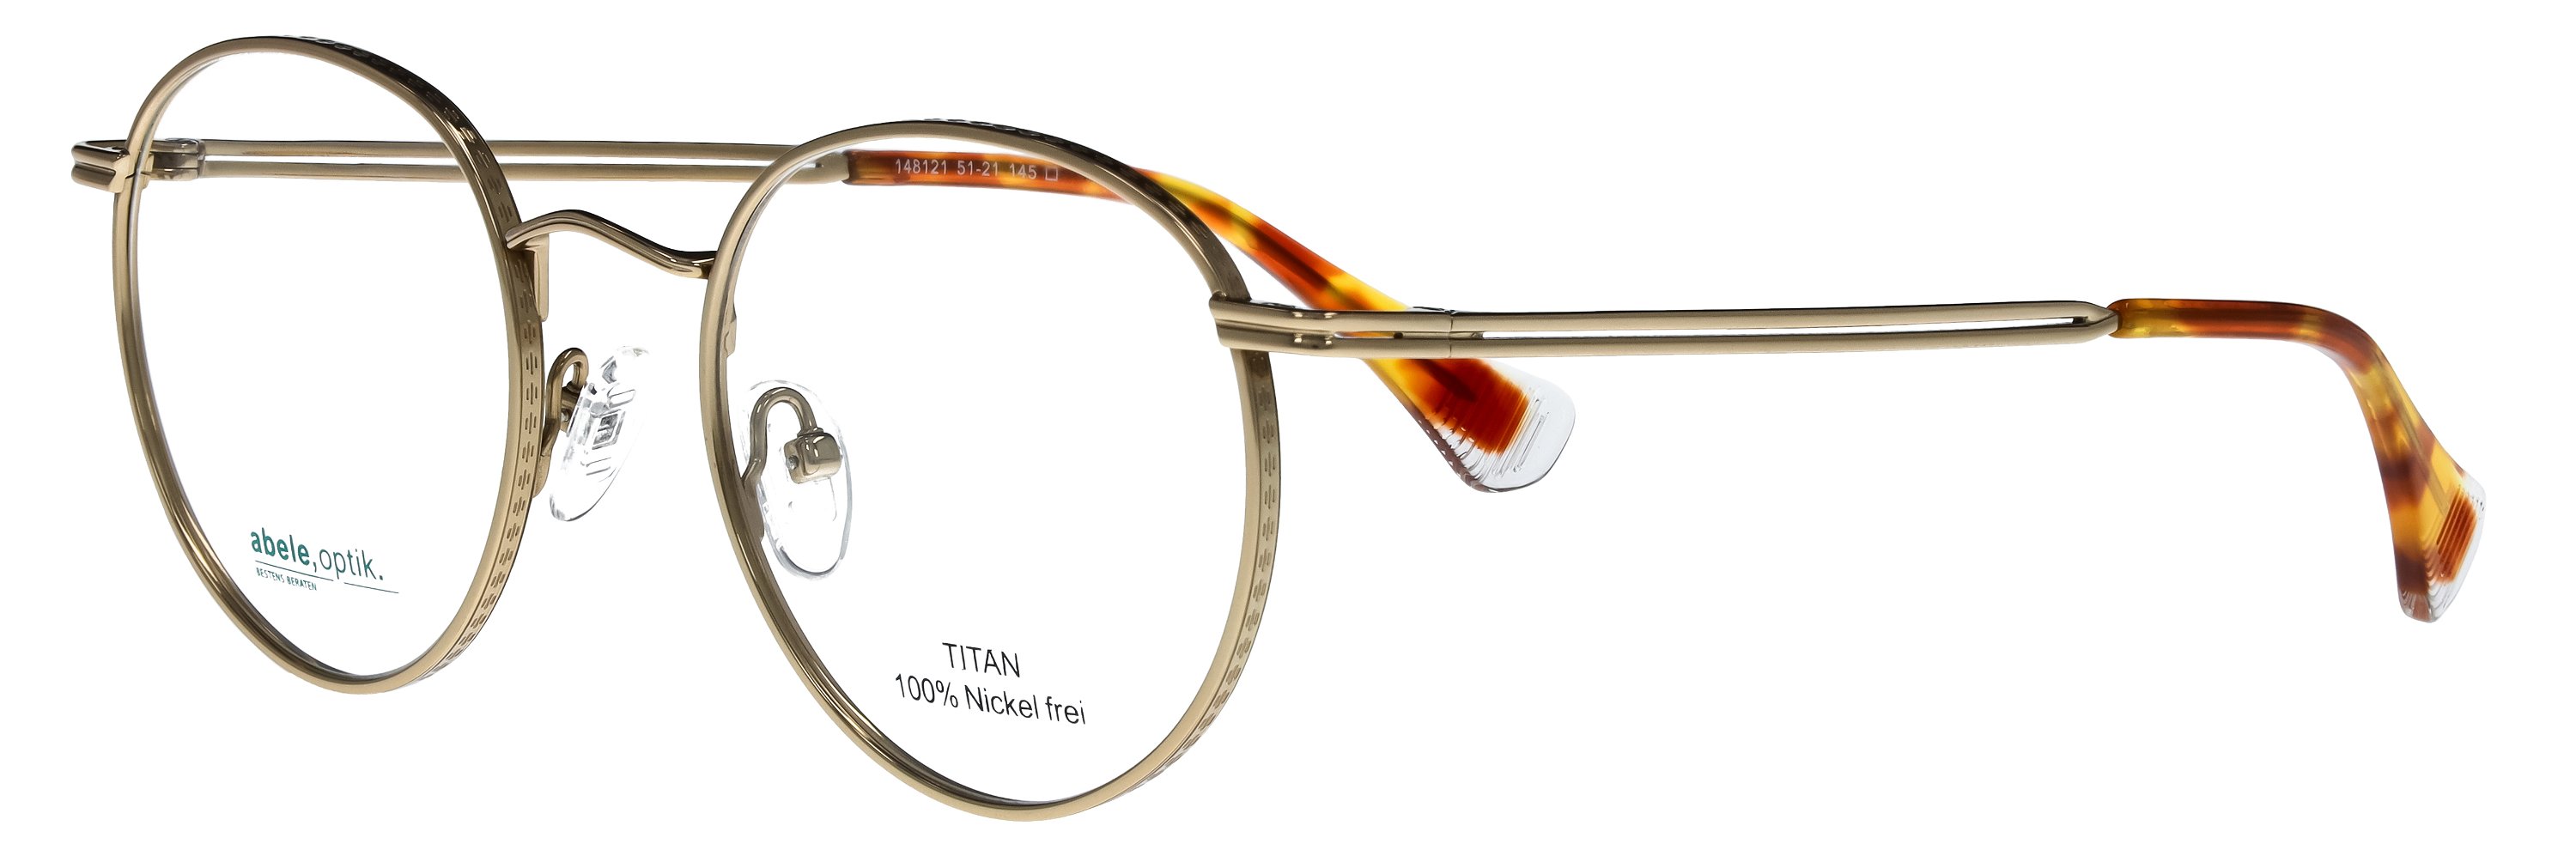 Das Bild zeigt die Korrektionsbrille 148121 von der Marke Abele Optik in gold.